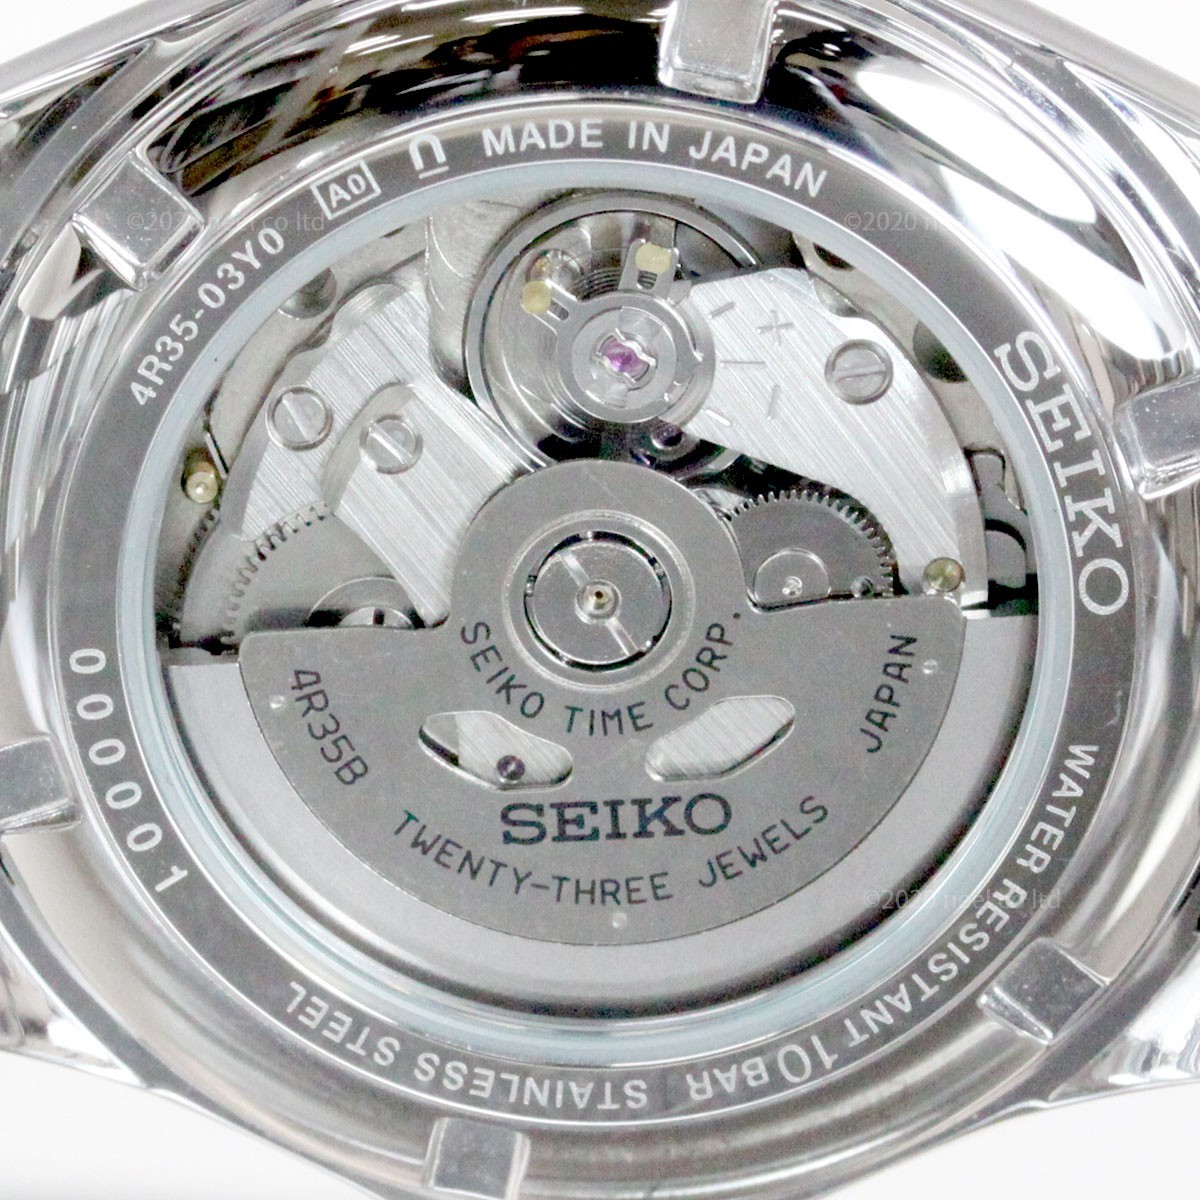 新品限定SALE セイコー SEIKO Mechanical SZSB016 neel PayPayモール店 - 通販 - PayPayモール メカニカル 先行販売 ネット流通限定 腕時計 クラシックライン 新作入荷安い